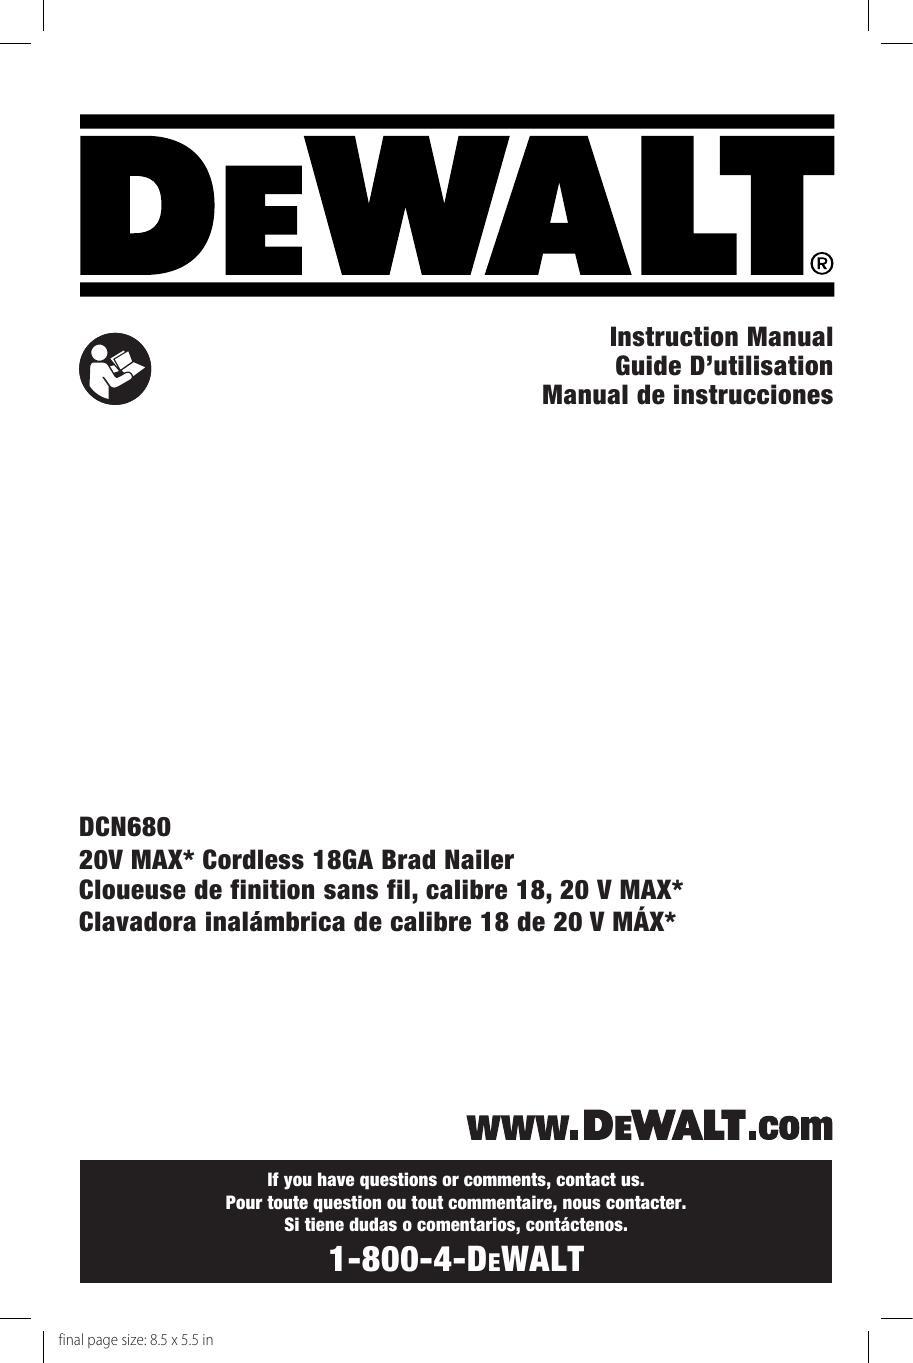 dcn680-20v-max-cordless-18ga-brad-nailer-instruction-manual.pdf